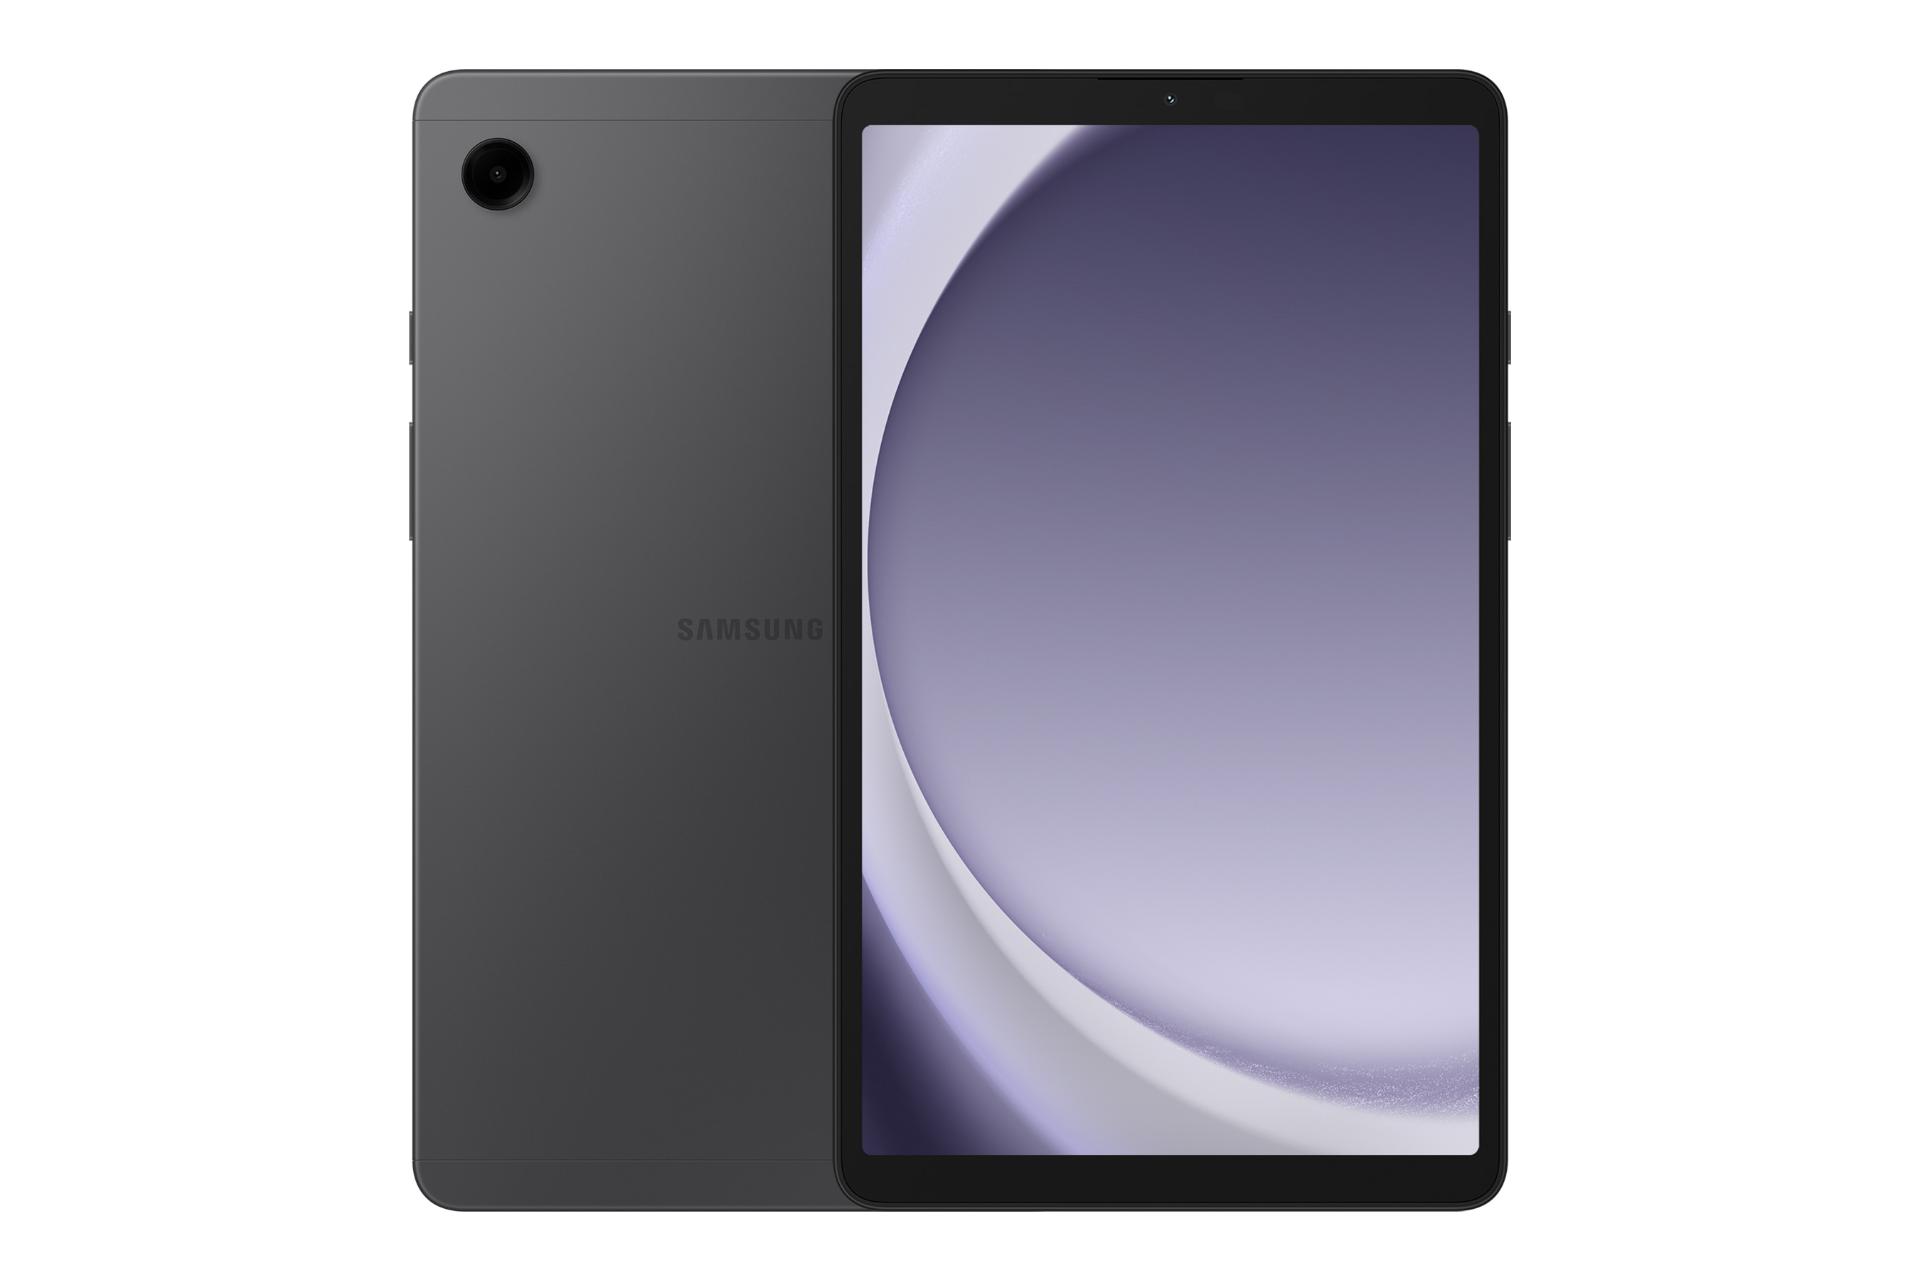 نمای کلی تبلت گلکسی تب A9 سامسونگ / Samsung Galaxy Tab A9 با نمایشگر روشن و نمایش لوگو و دوربین پنل پشت رنگ خاکستری